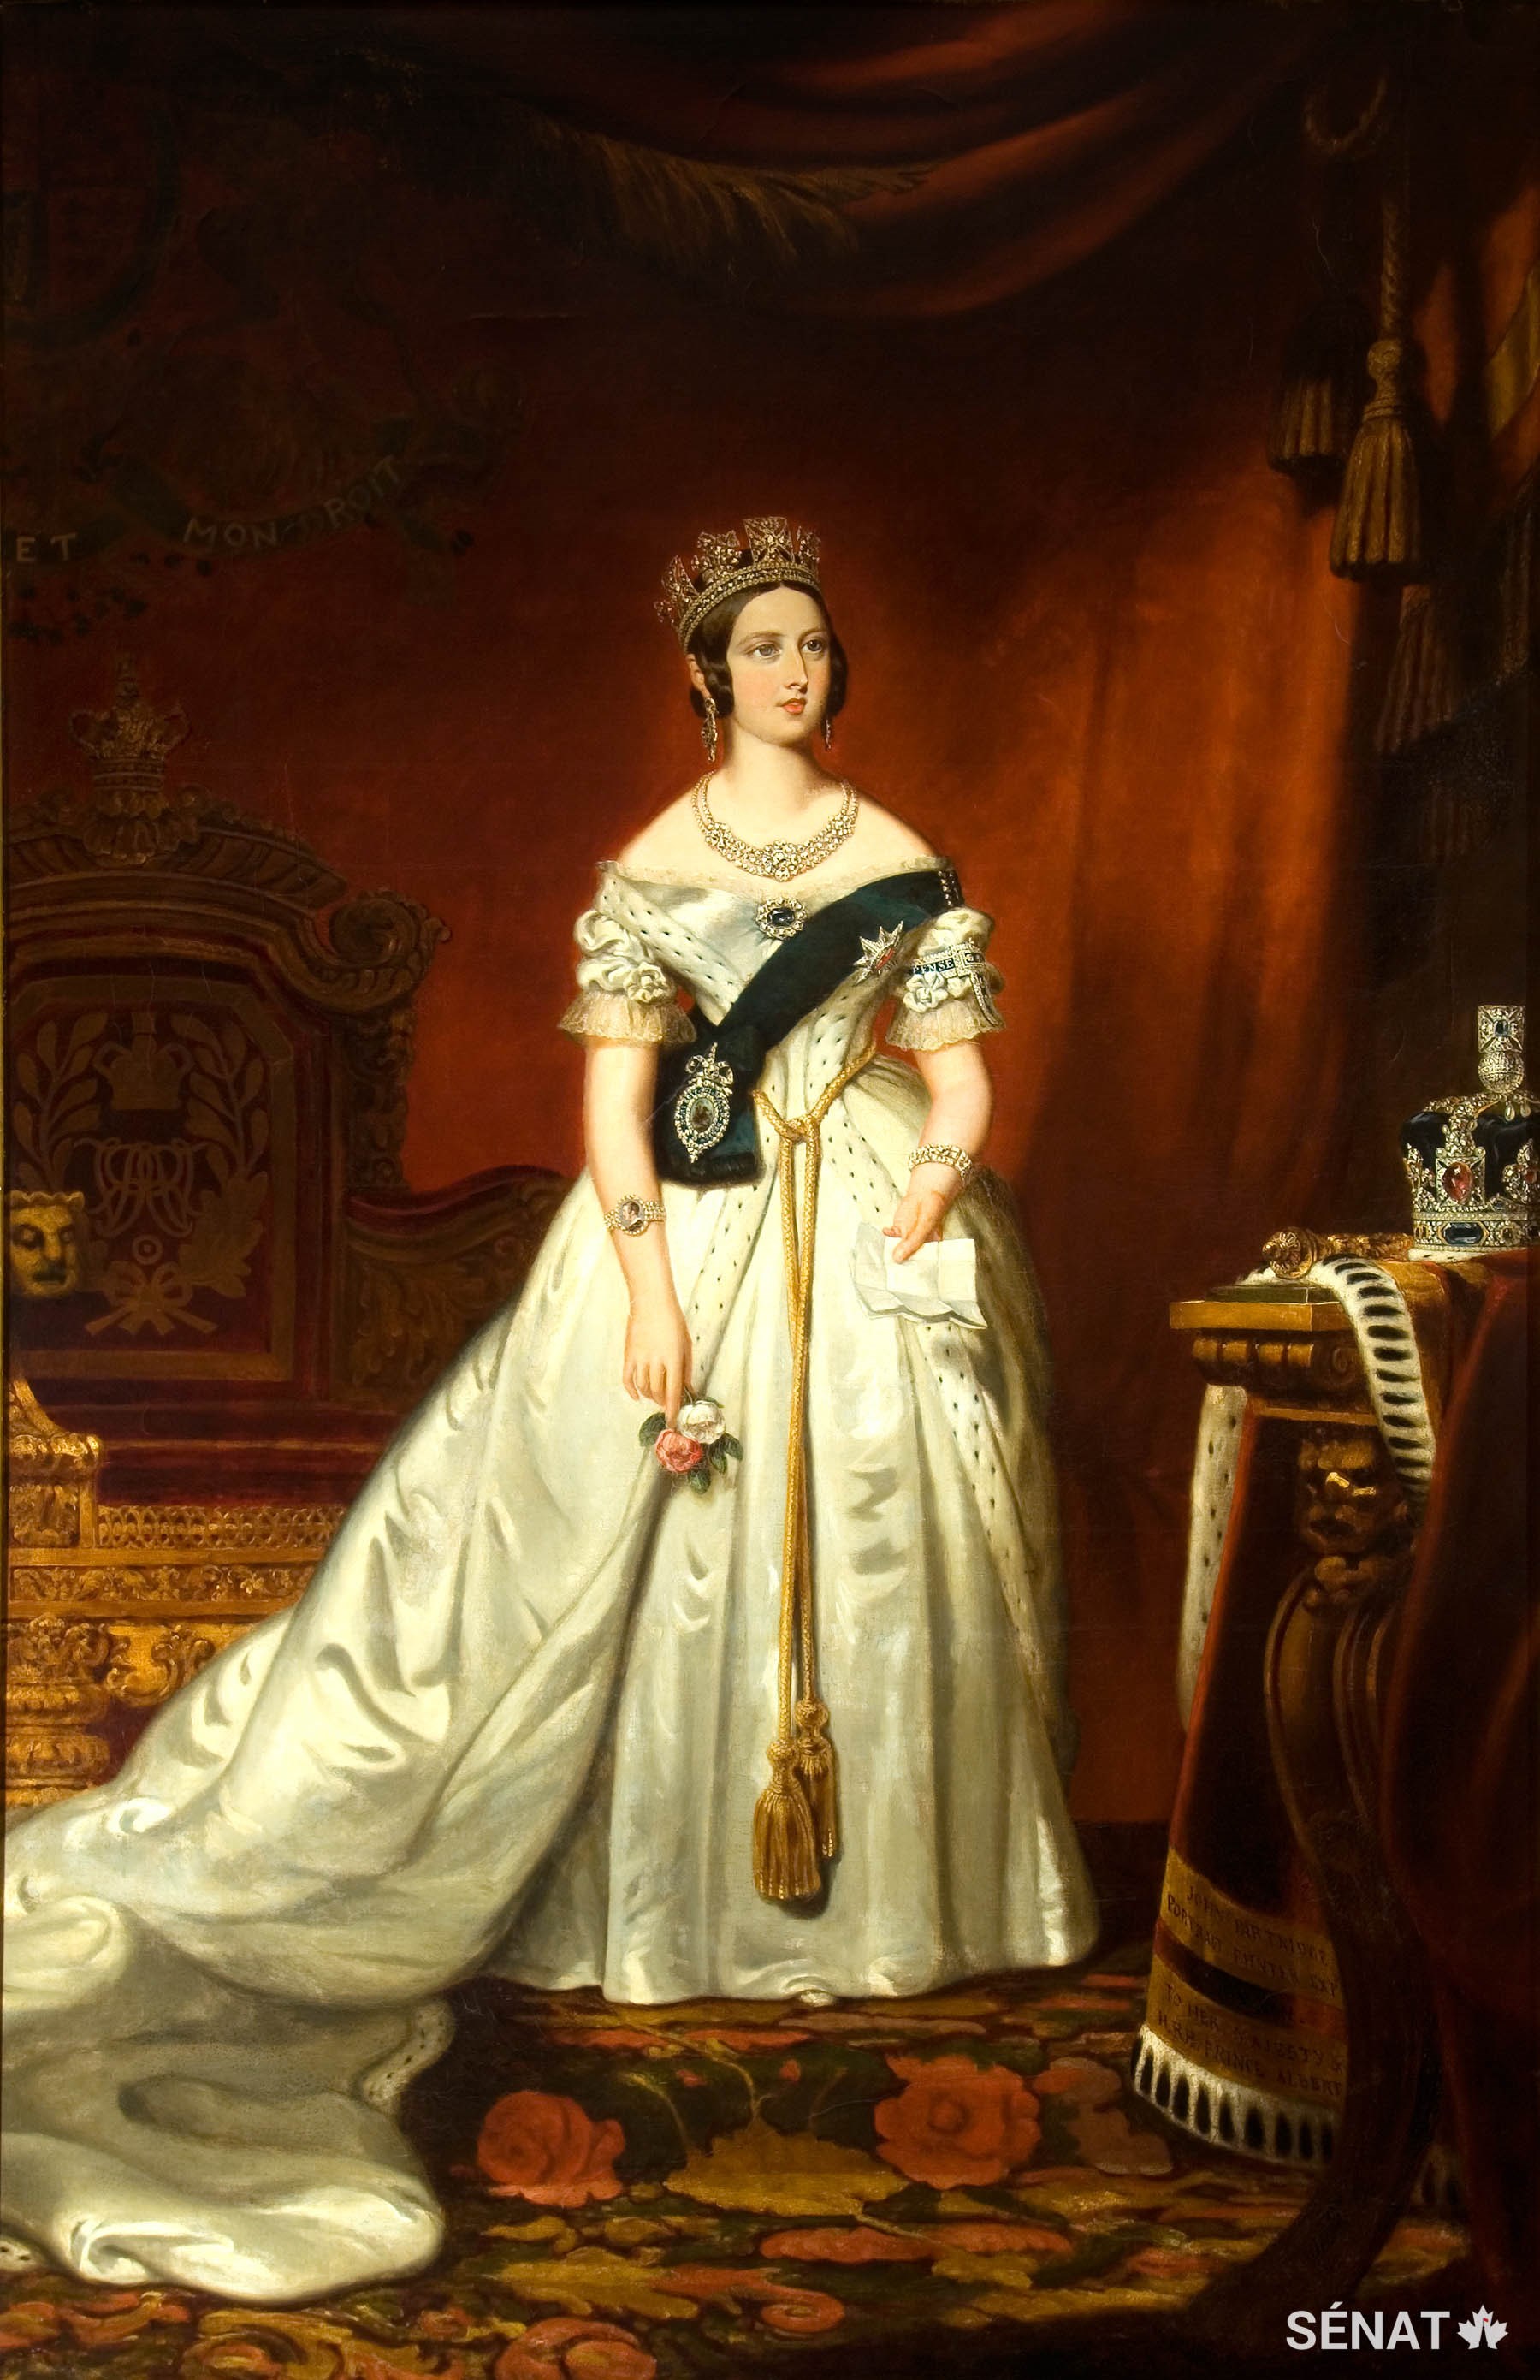 Ce portrait de la reine Victoria, peint par l’artiste britannique John Partridge en 1842 et arrivé au Canada en 1847, est sans doute l’œuvre d’art la plus connue parmi celles exposées au Sénat.